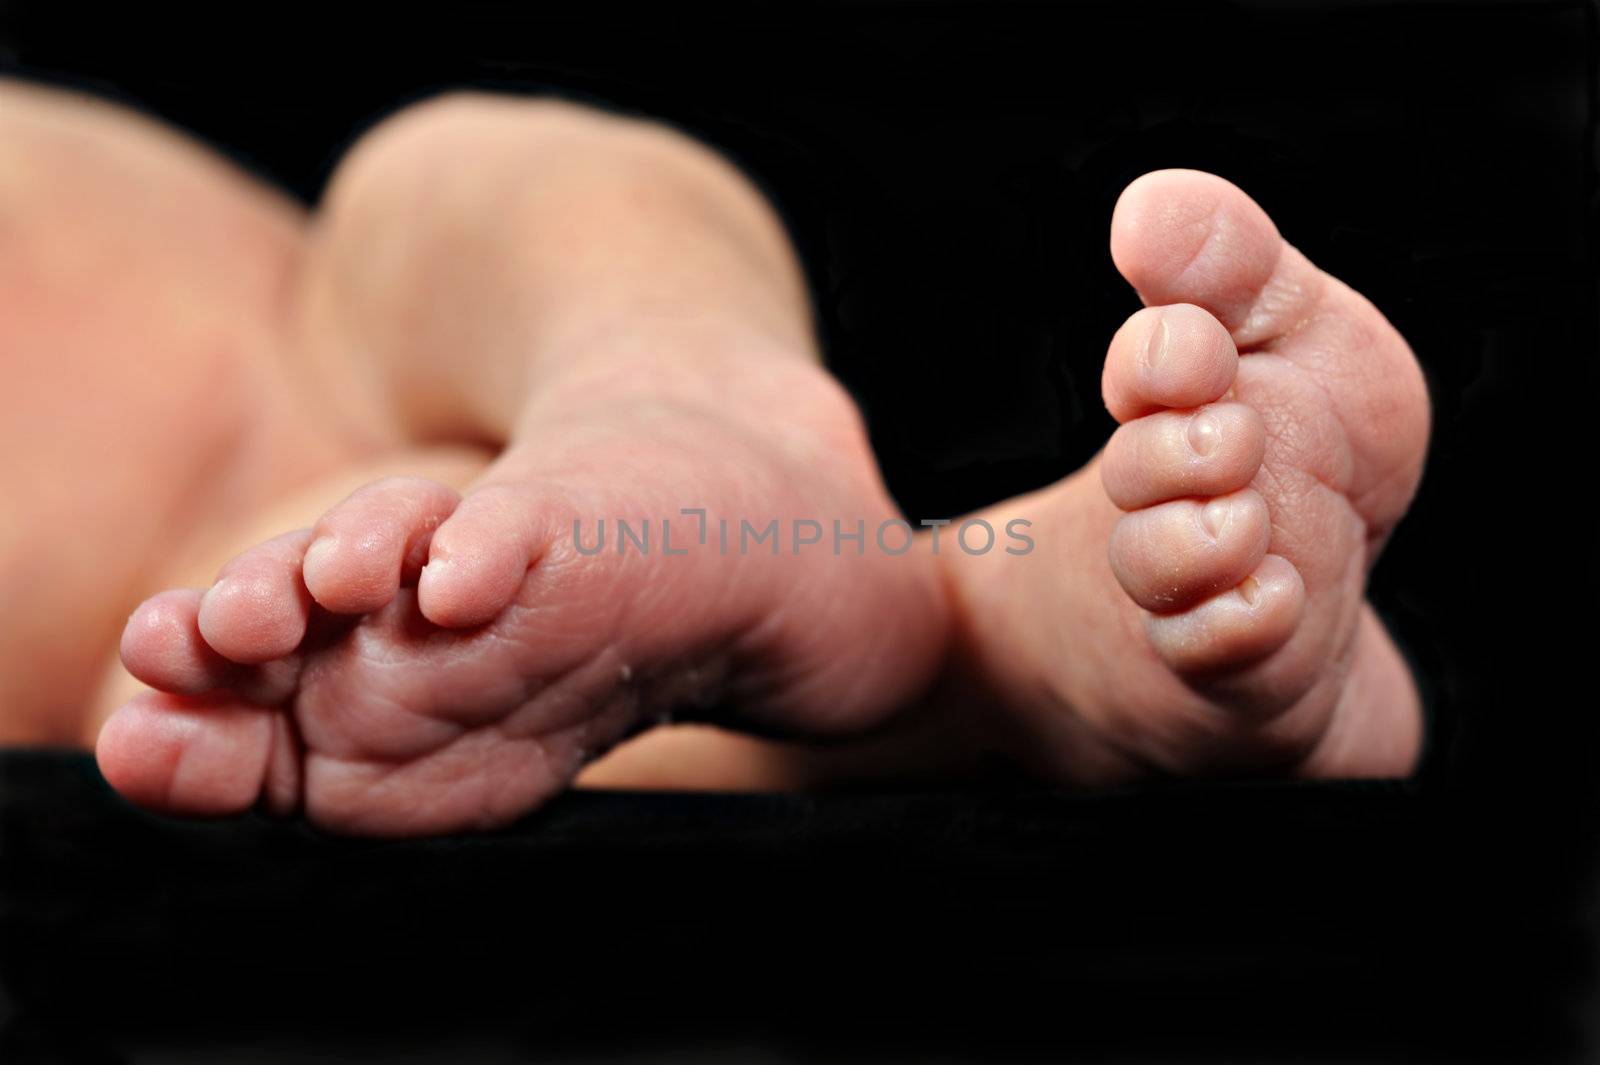 Little feet of a newborn baby